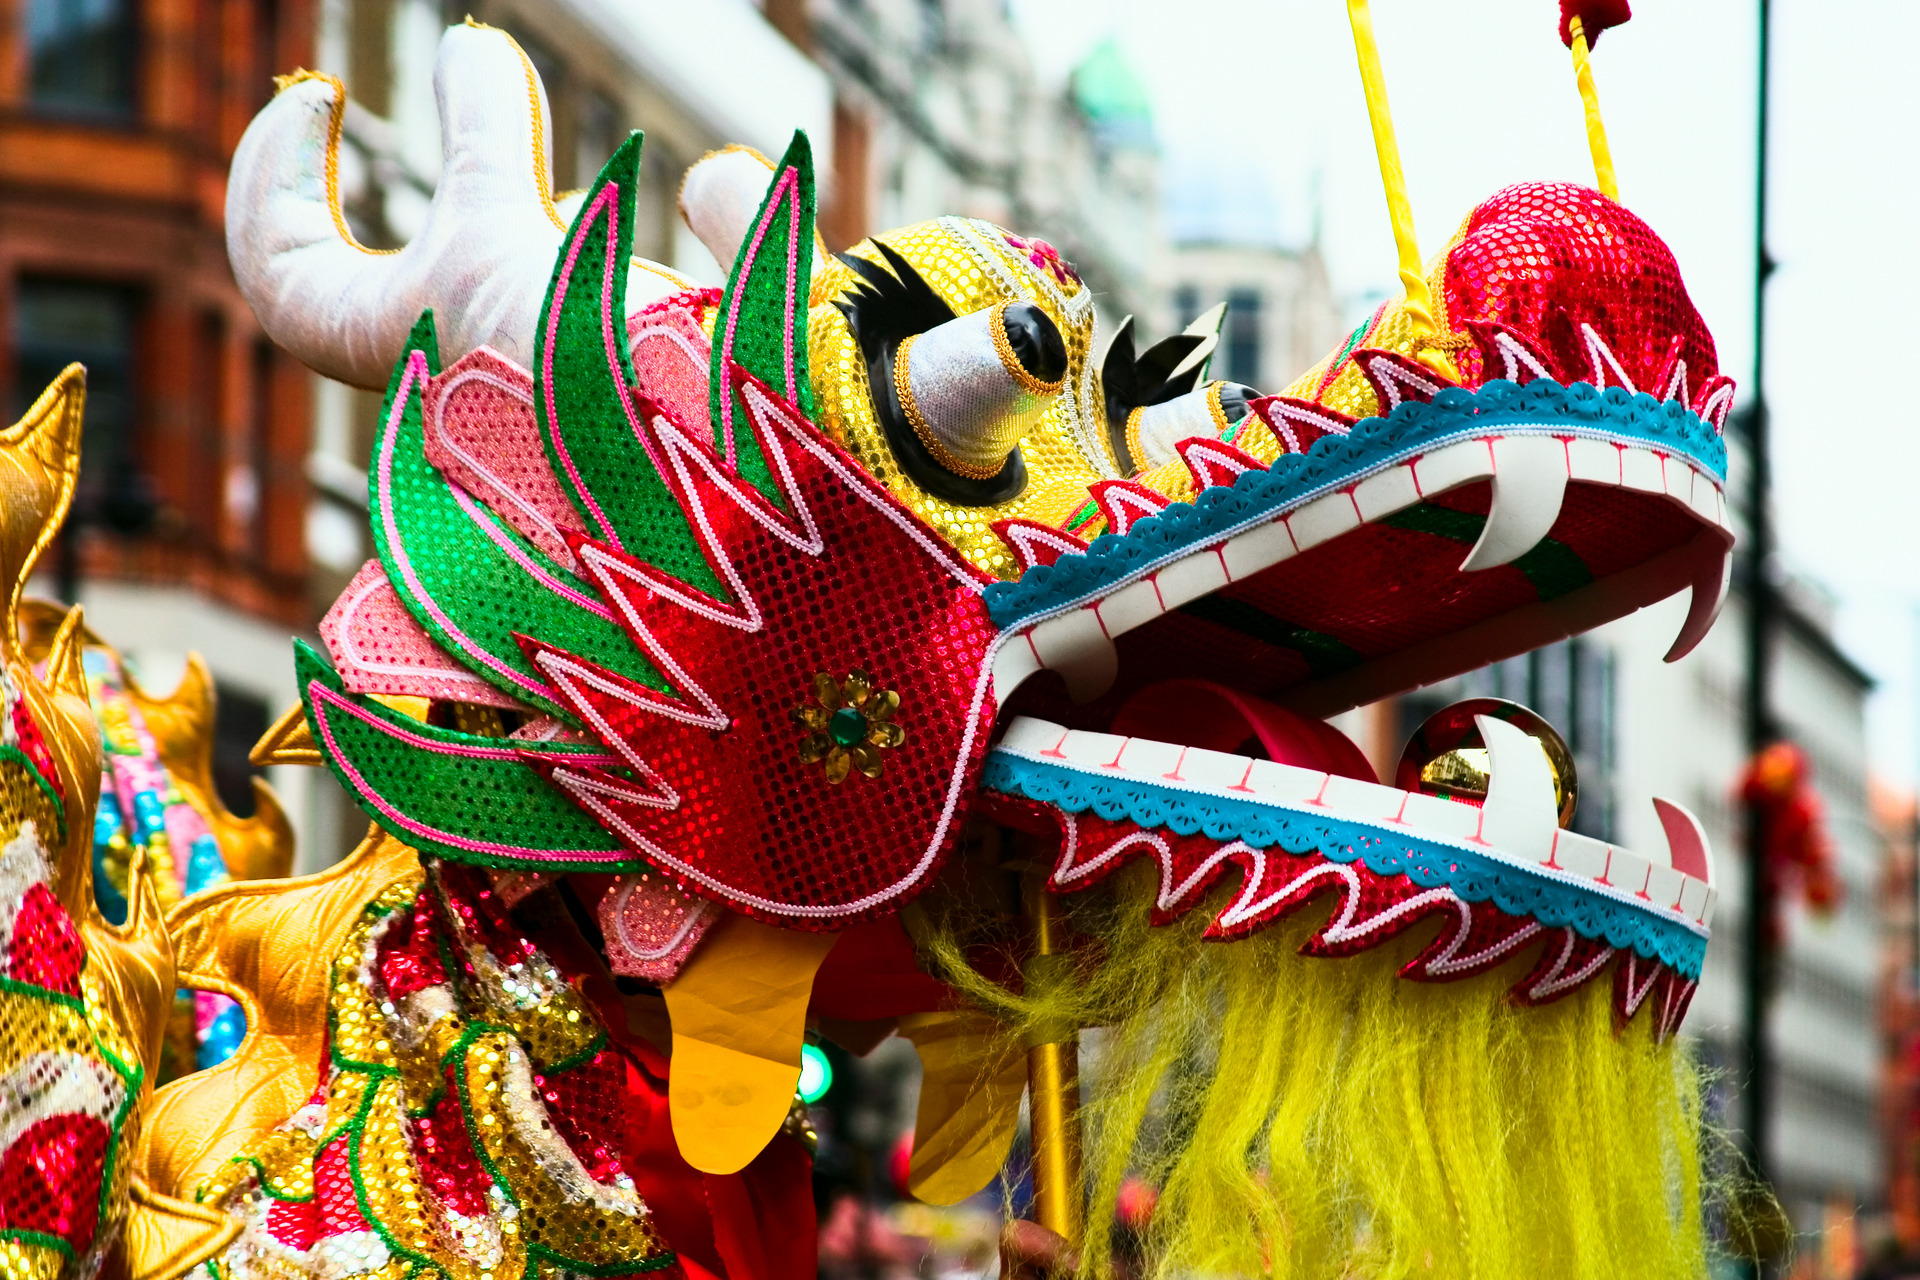 Bunte Dekoration in Form eines Drachen zum Chinesischen Neujahrsfest.